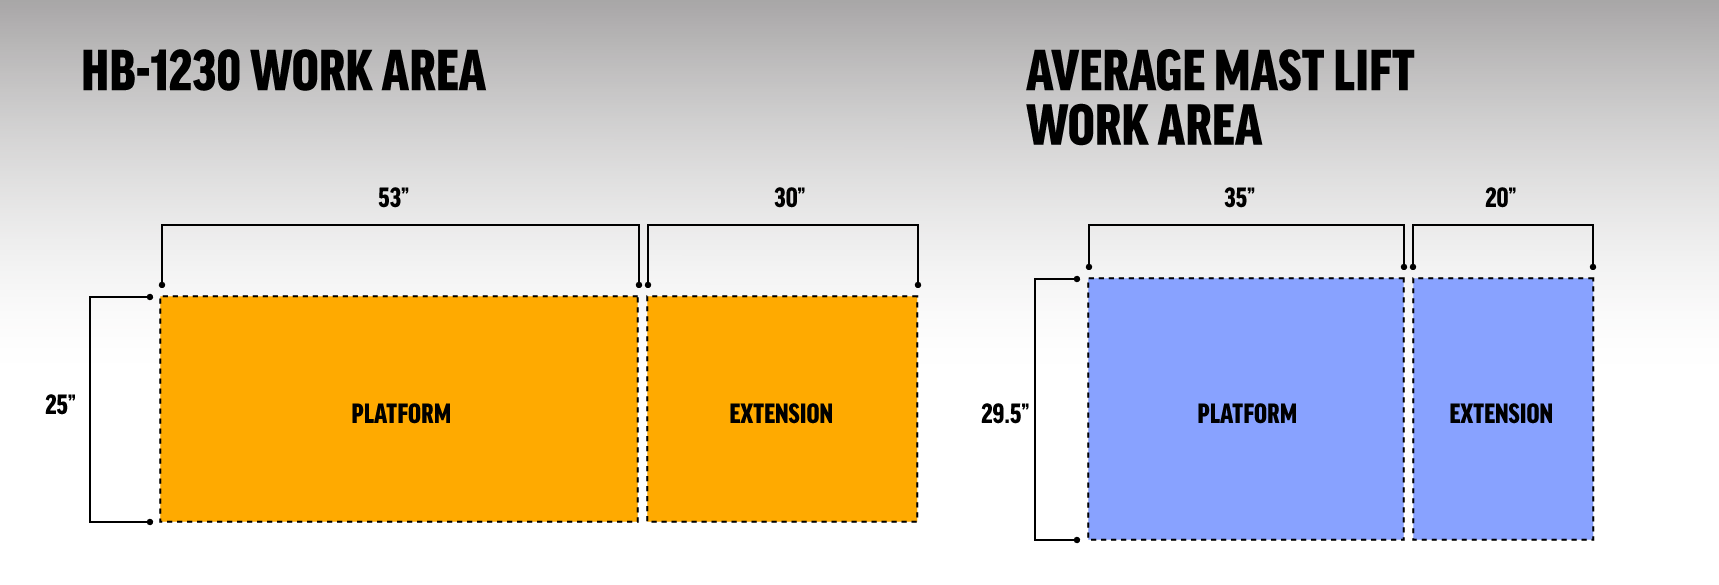 HB-1230 Work Area Comparison